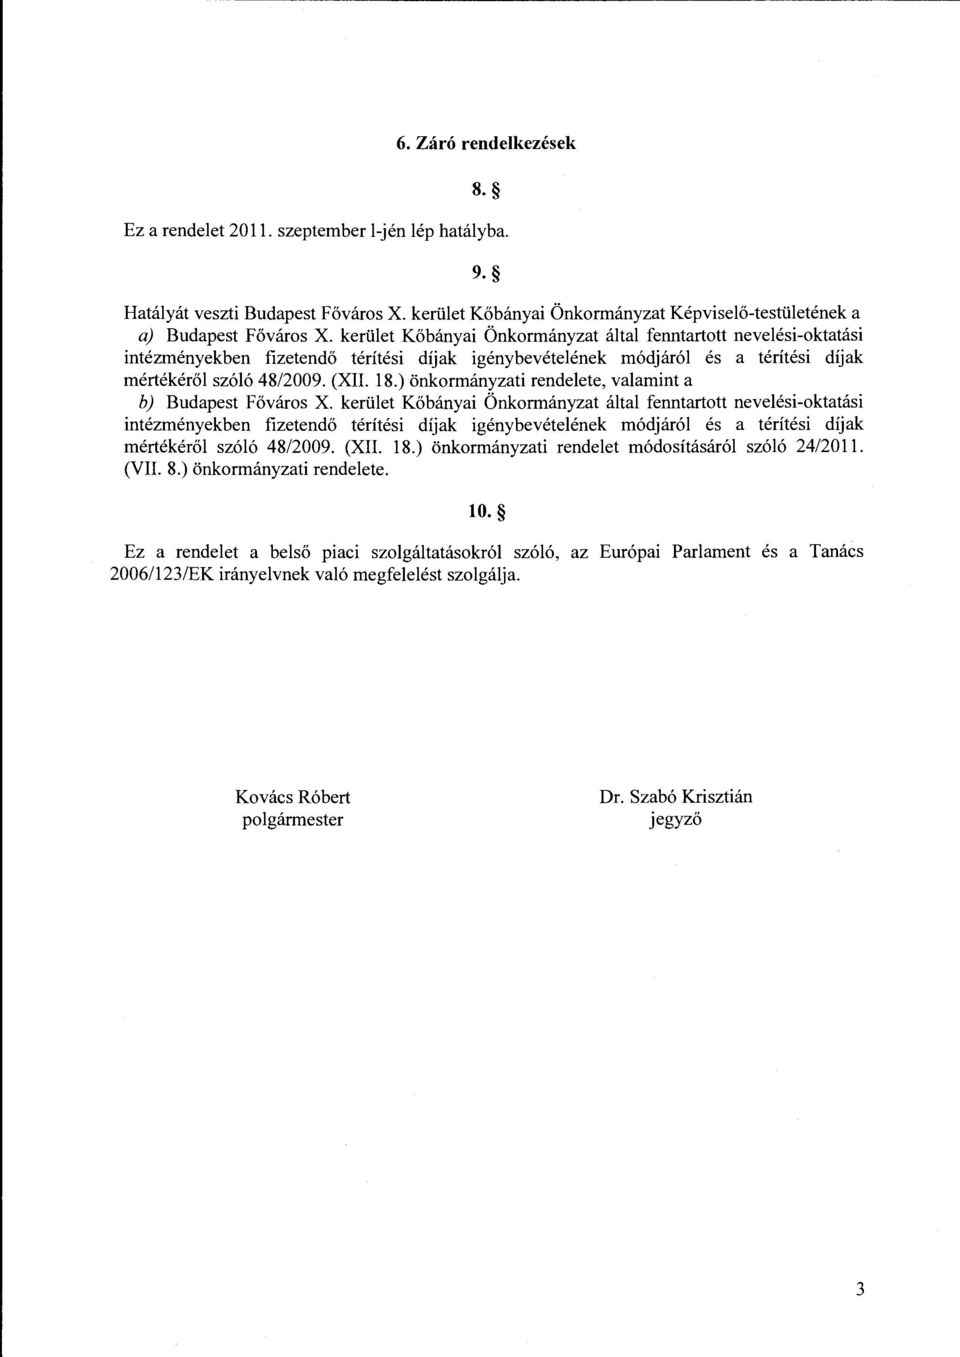 ) önkormányzati rendelete, valamint a b) Budapest Főváros X. ) önkormányzati rendelet módosításáról szóló 24/2011. (VII. 8.) önkormányzati rendelete. 10.